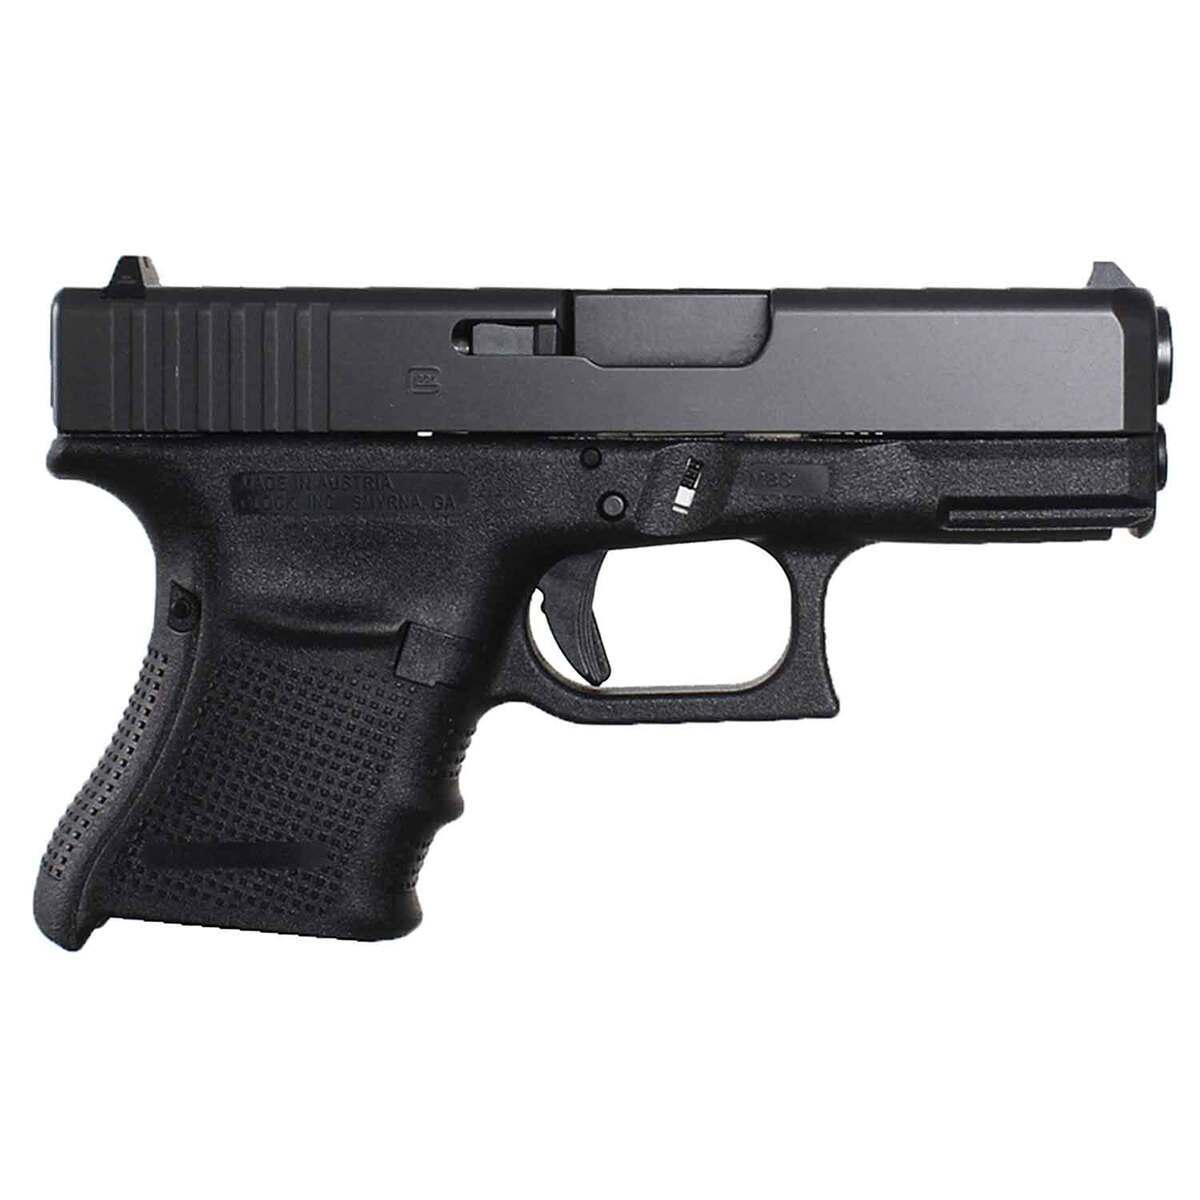 https://www.sportsmans.com/medias/glock-30-g4-45-auto-acp-378in-black-pistol-101-rounds-1351902-1.jpg?context=bWFzdGVyfGltYWdlc3w2MzA0N3xpbWFnZS9qcGVnfGg5My9oZTcvMTE3Mjk3NzAzMTU4MDYvMTIwMC1jb252ZXJzaW9uRm9ybWF0X2Jhc2UtY29udmVyc2lvbkZvcm1hdF9zbXctMTM1MTkwMi0xLmpwZ3wwZGU3YzNmODAwMWRiMjE0NjViNWMxYzM4ZDUwMTFiYzMyN2ZhNmQ2N2ZhNjkyNmYzMjM3NGYyNzk1MTk2OTQz